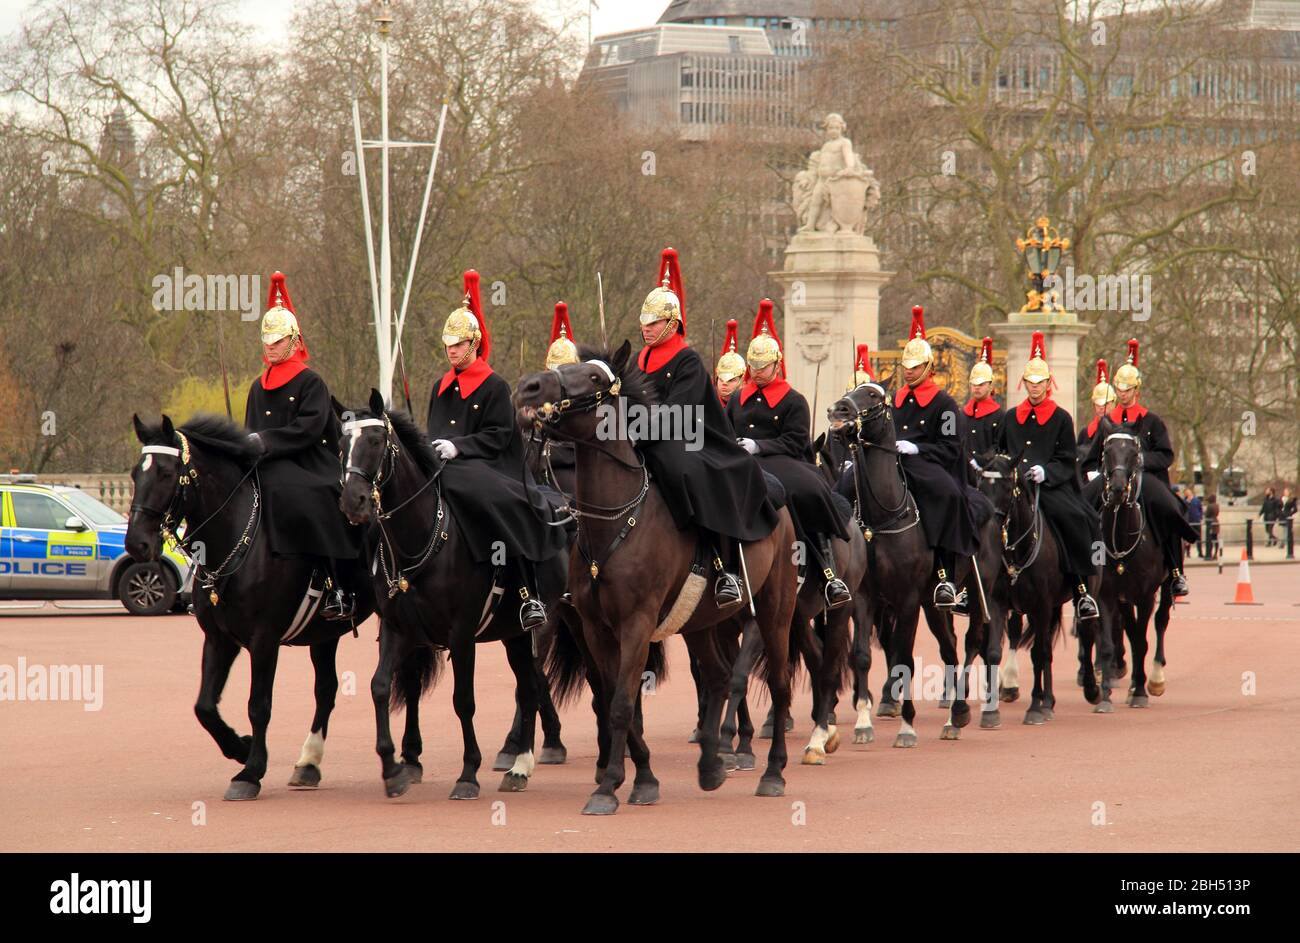 Les membres de la Cavalerie de la maison participent à la relève de la garde au Palais de Buckingham à Londres, Angleterre le 13 mars 2020 à Londres, Angleterre Banque D'Images